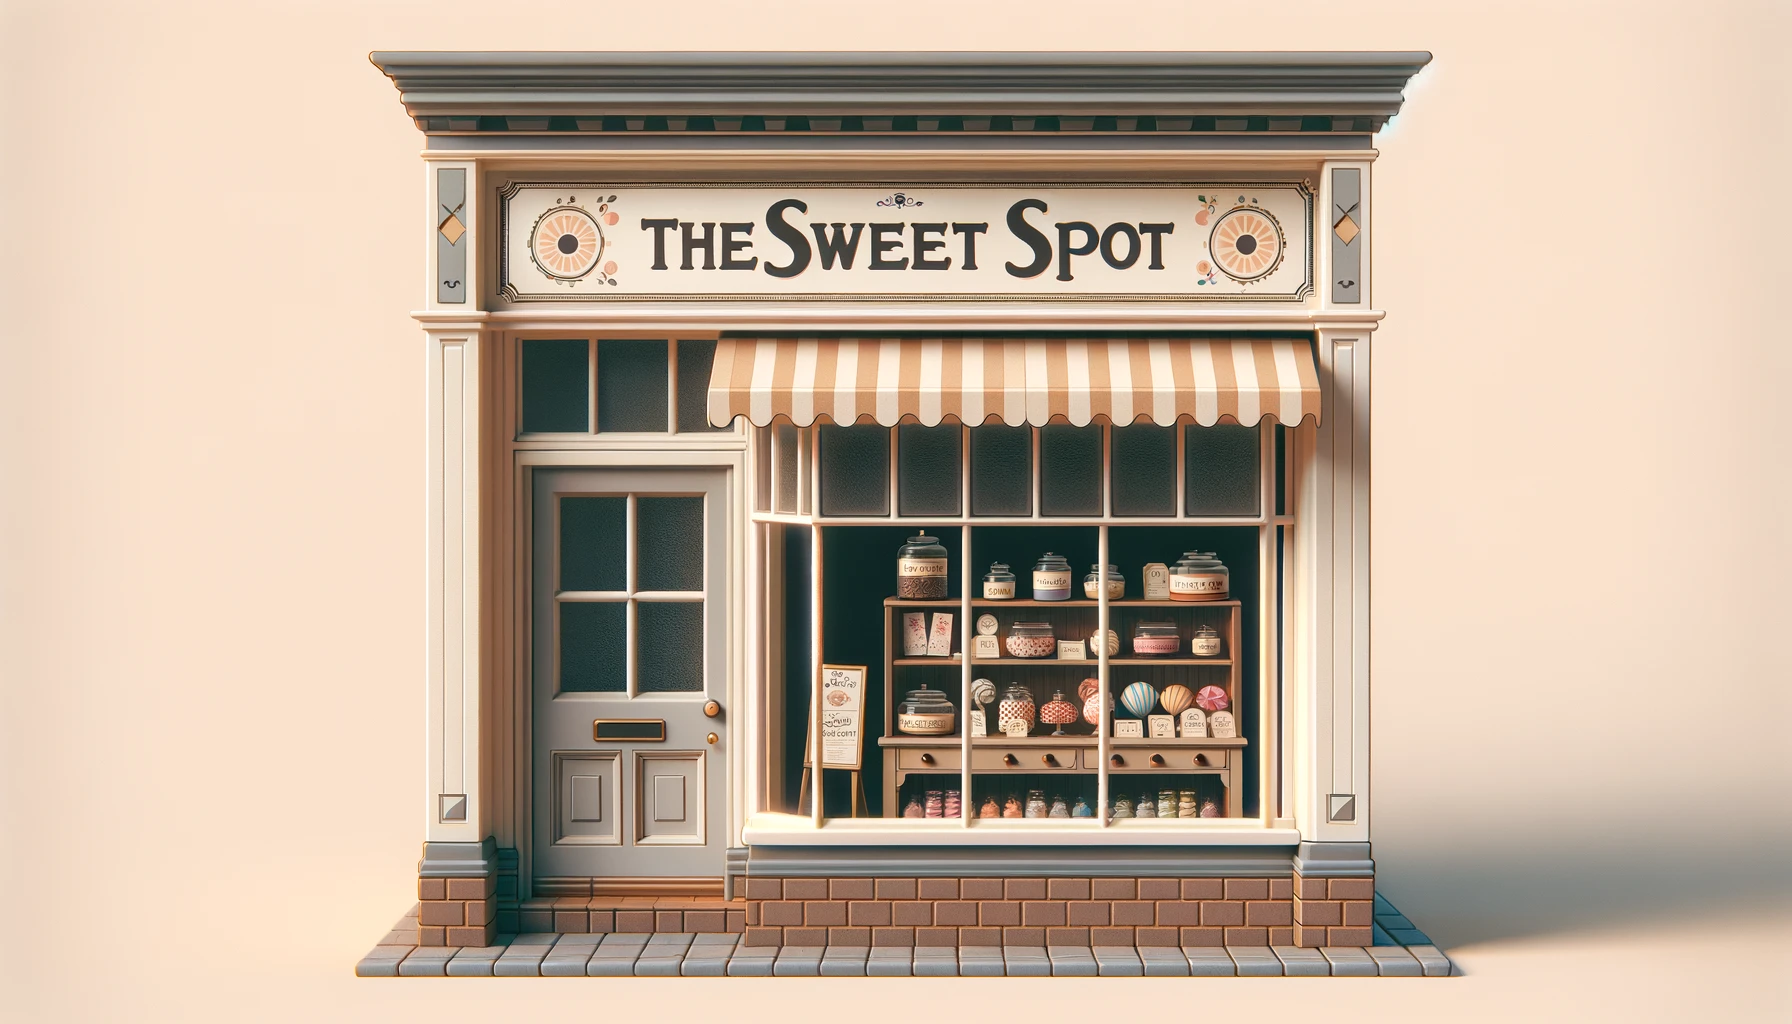 basic sweet shopfront design ideas